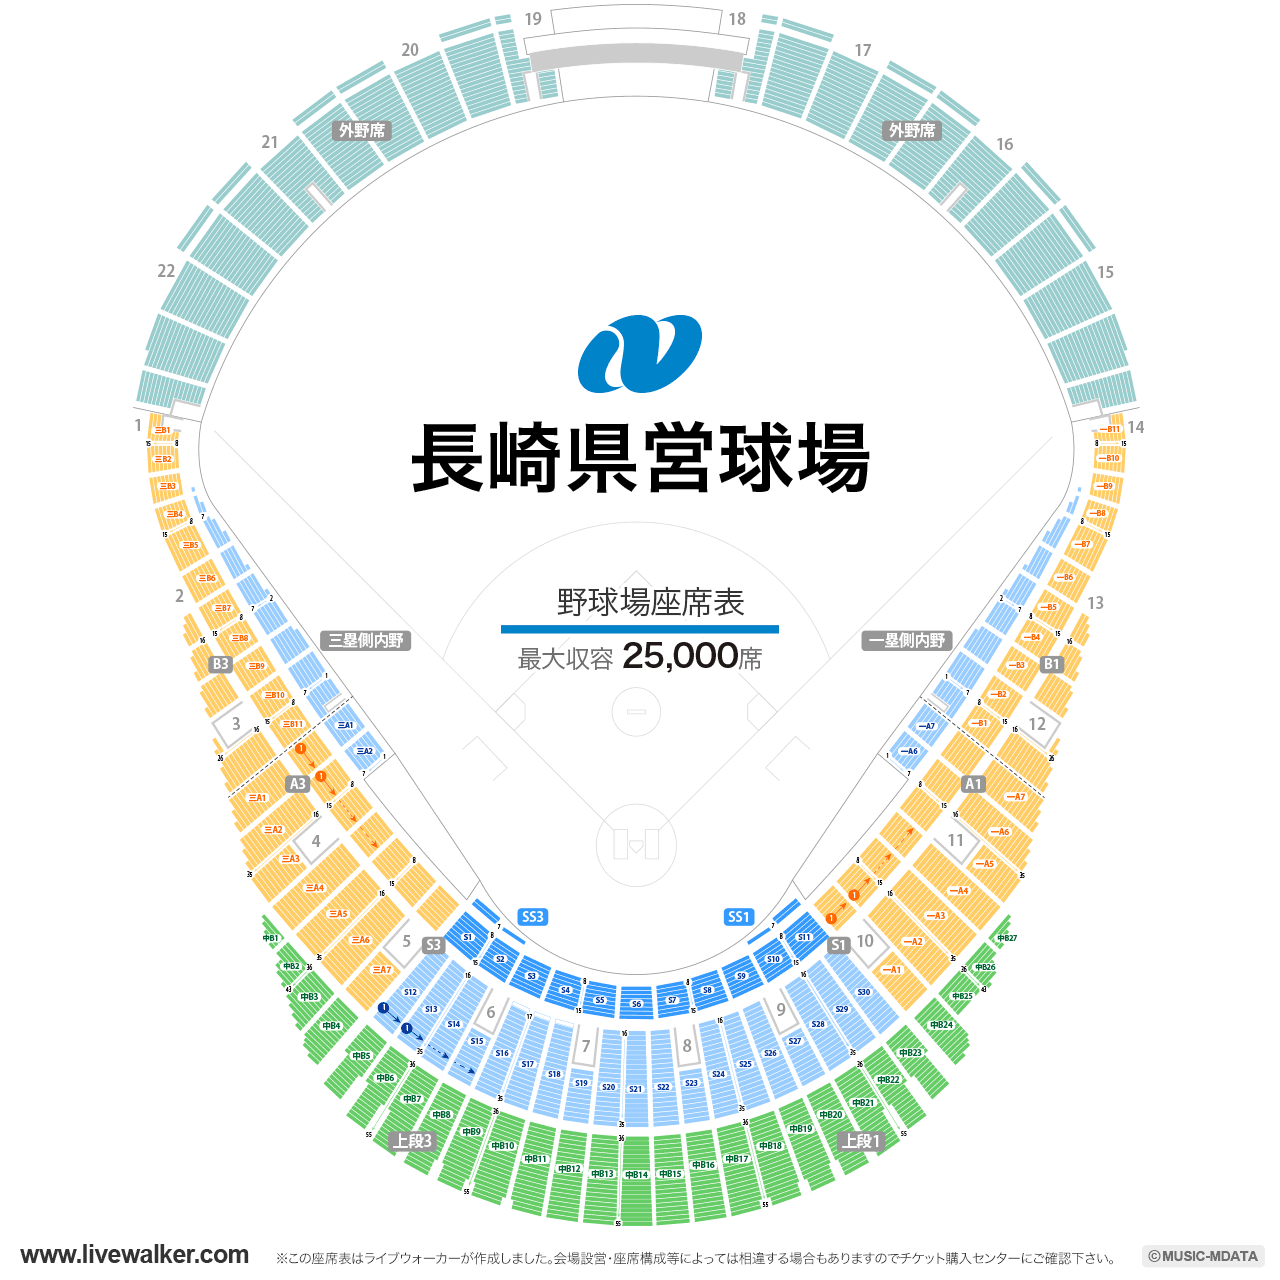 長崎県営野球場（長崎ビッグNスタジアム）スタジアムの座席表